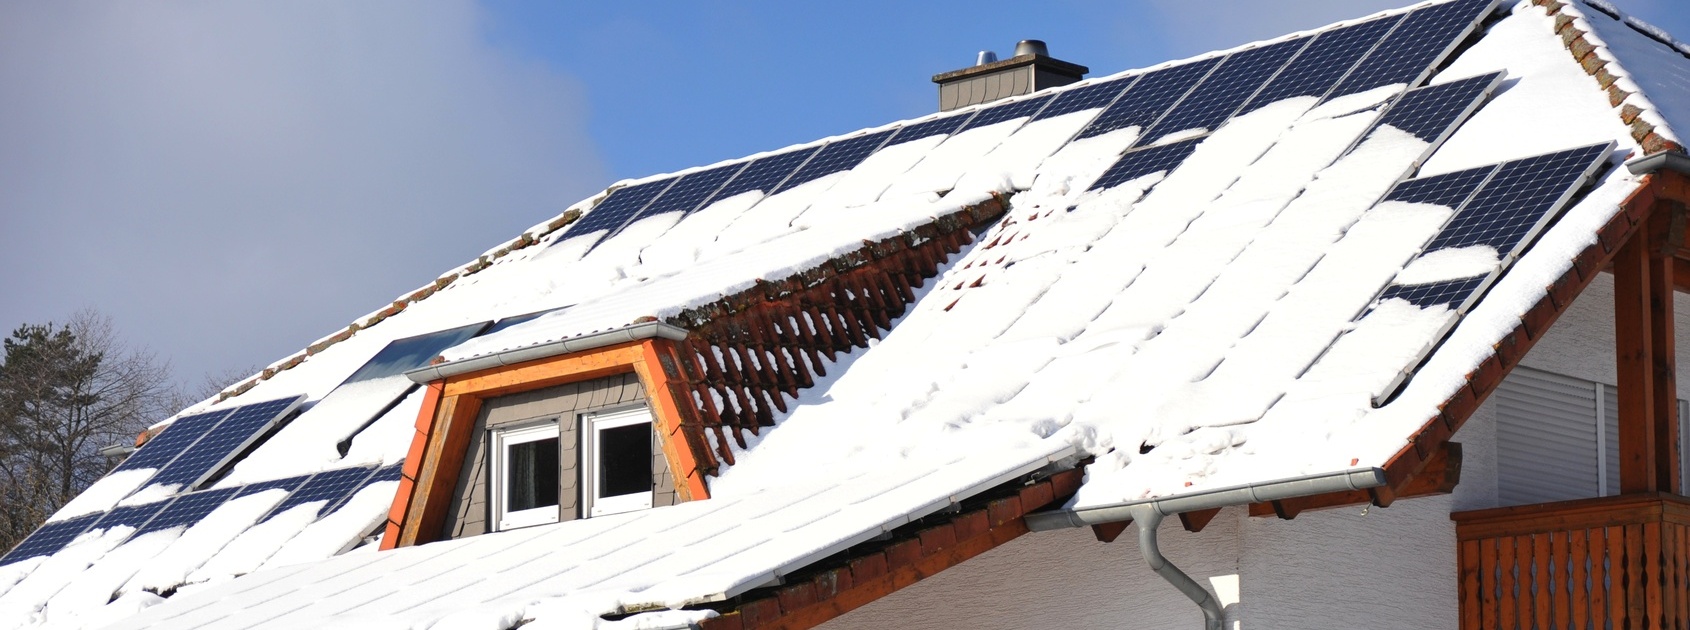 Was bringt eine Solaranlage im Winter?